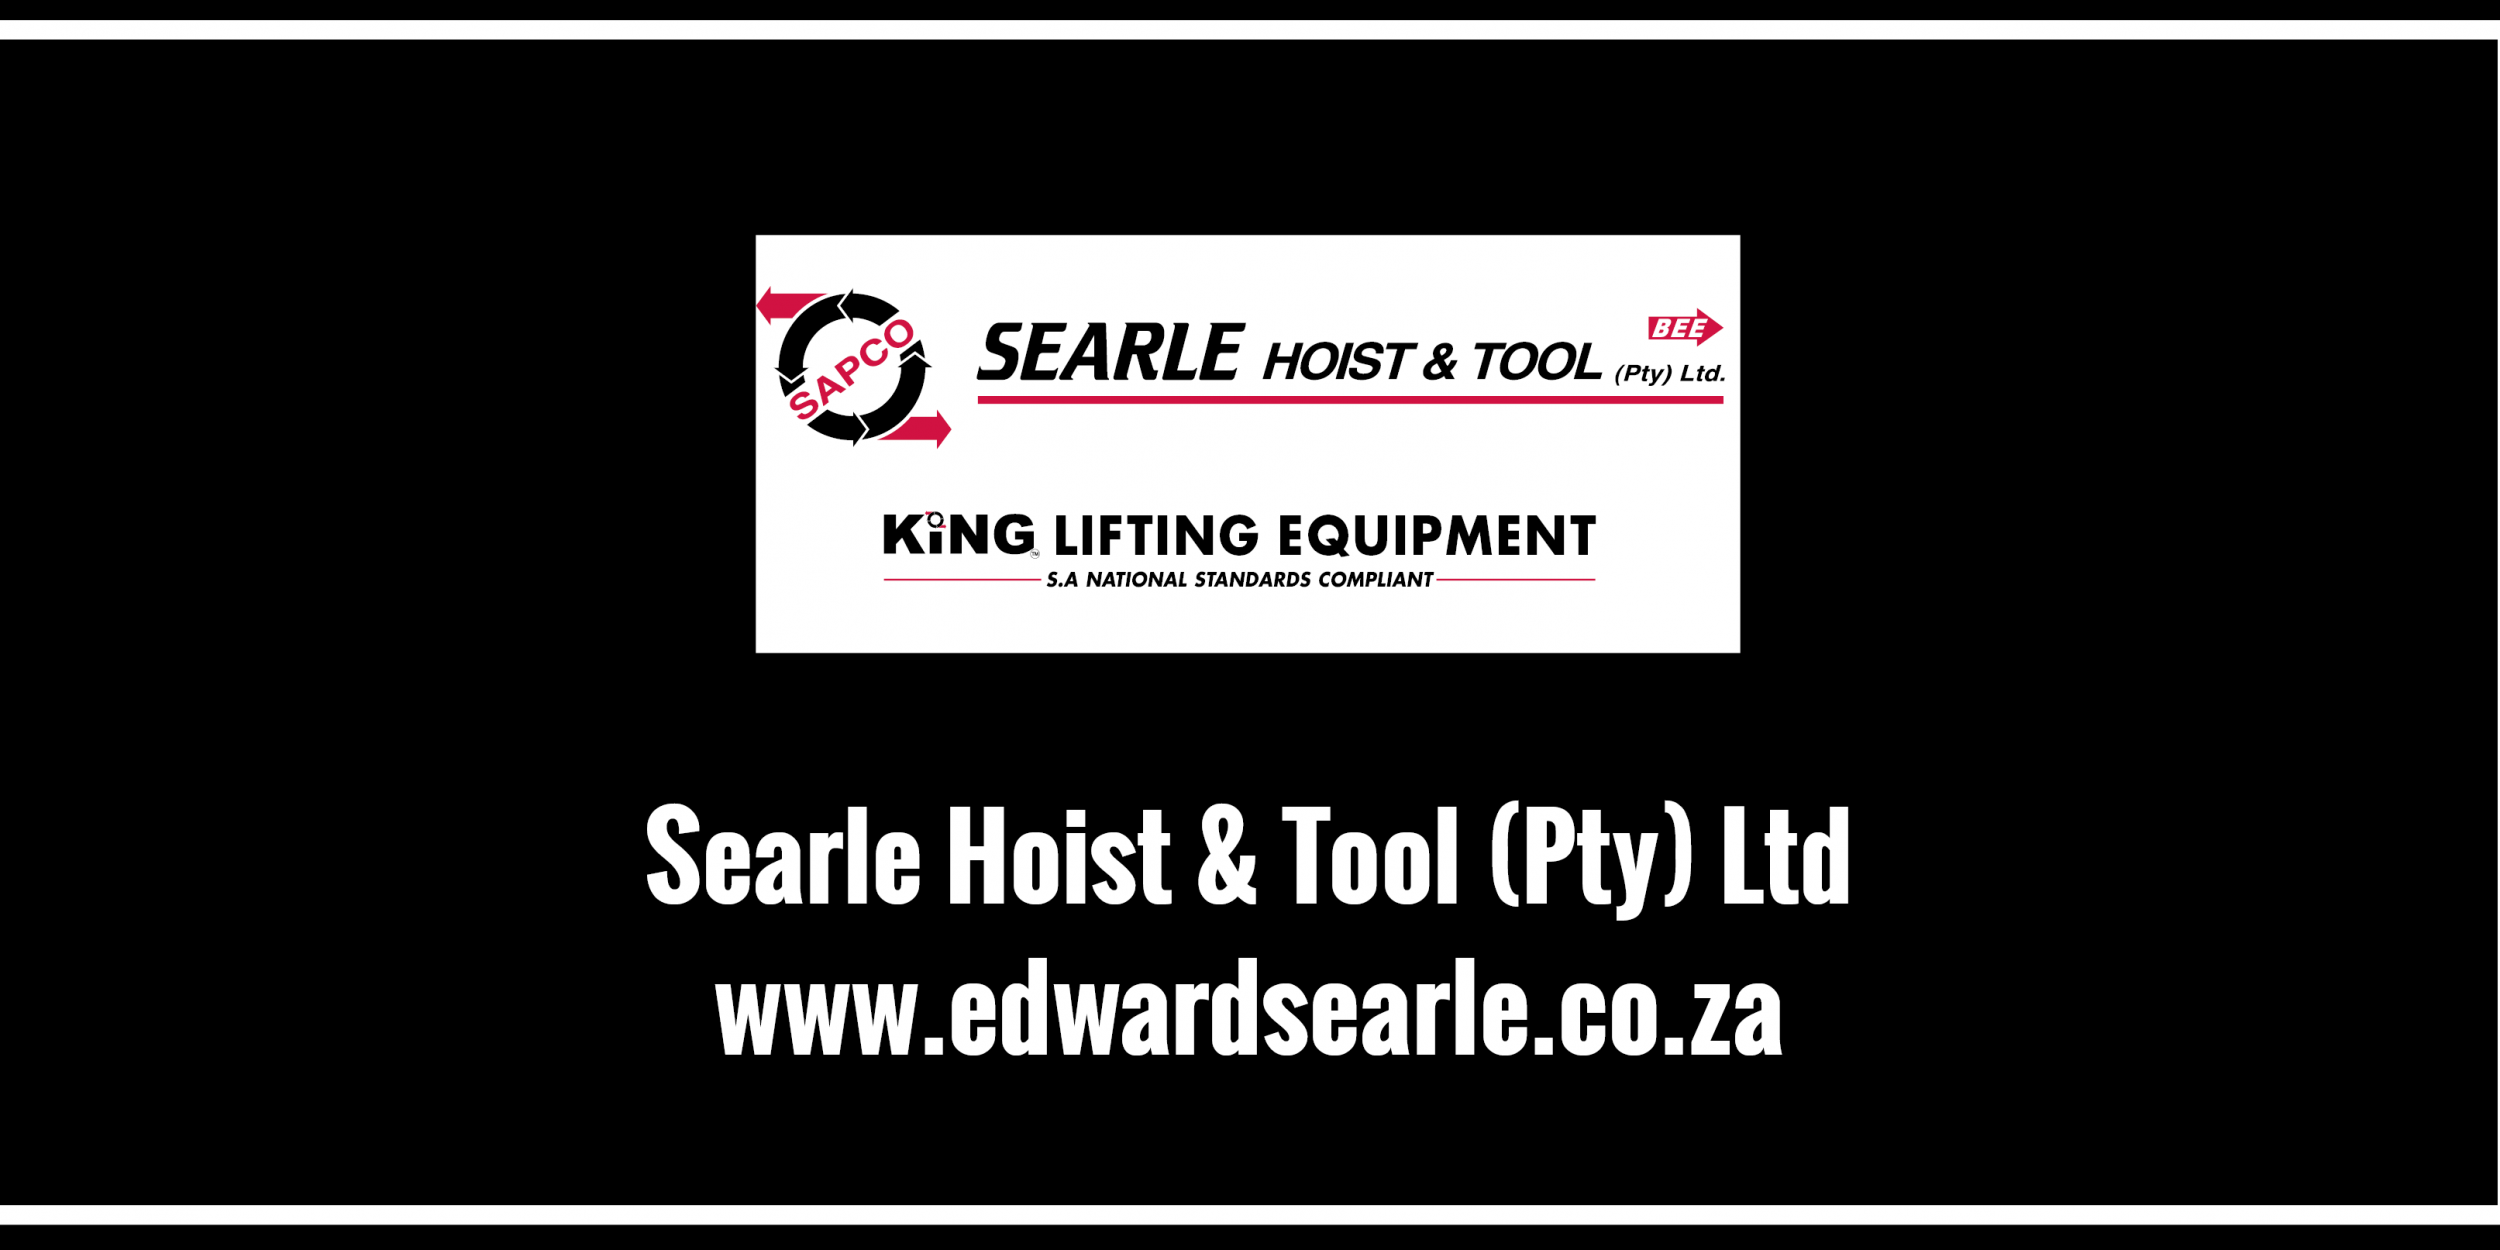 Searle Hoist & Tool (Pty) Ltd